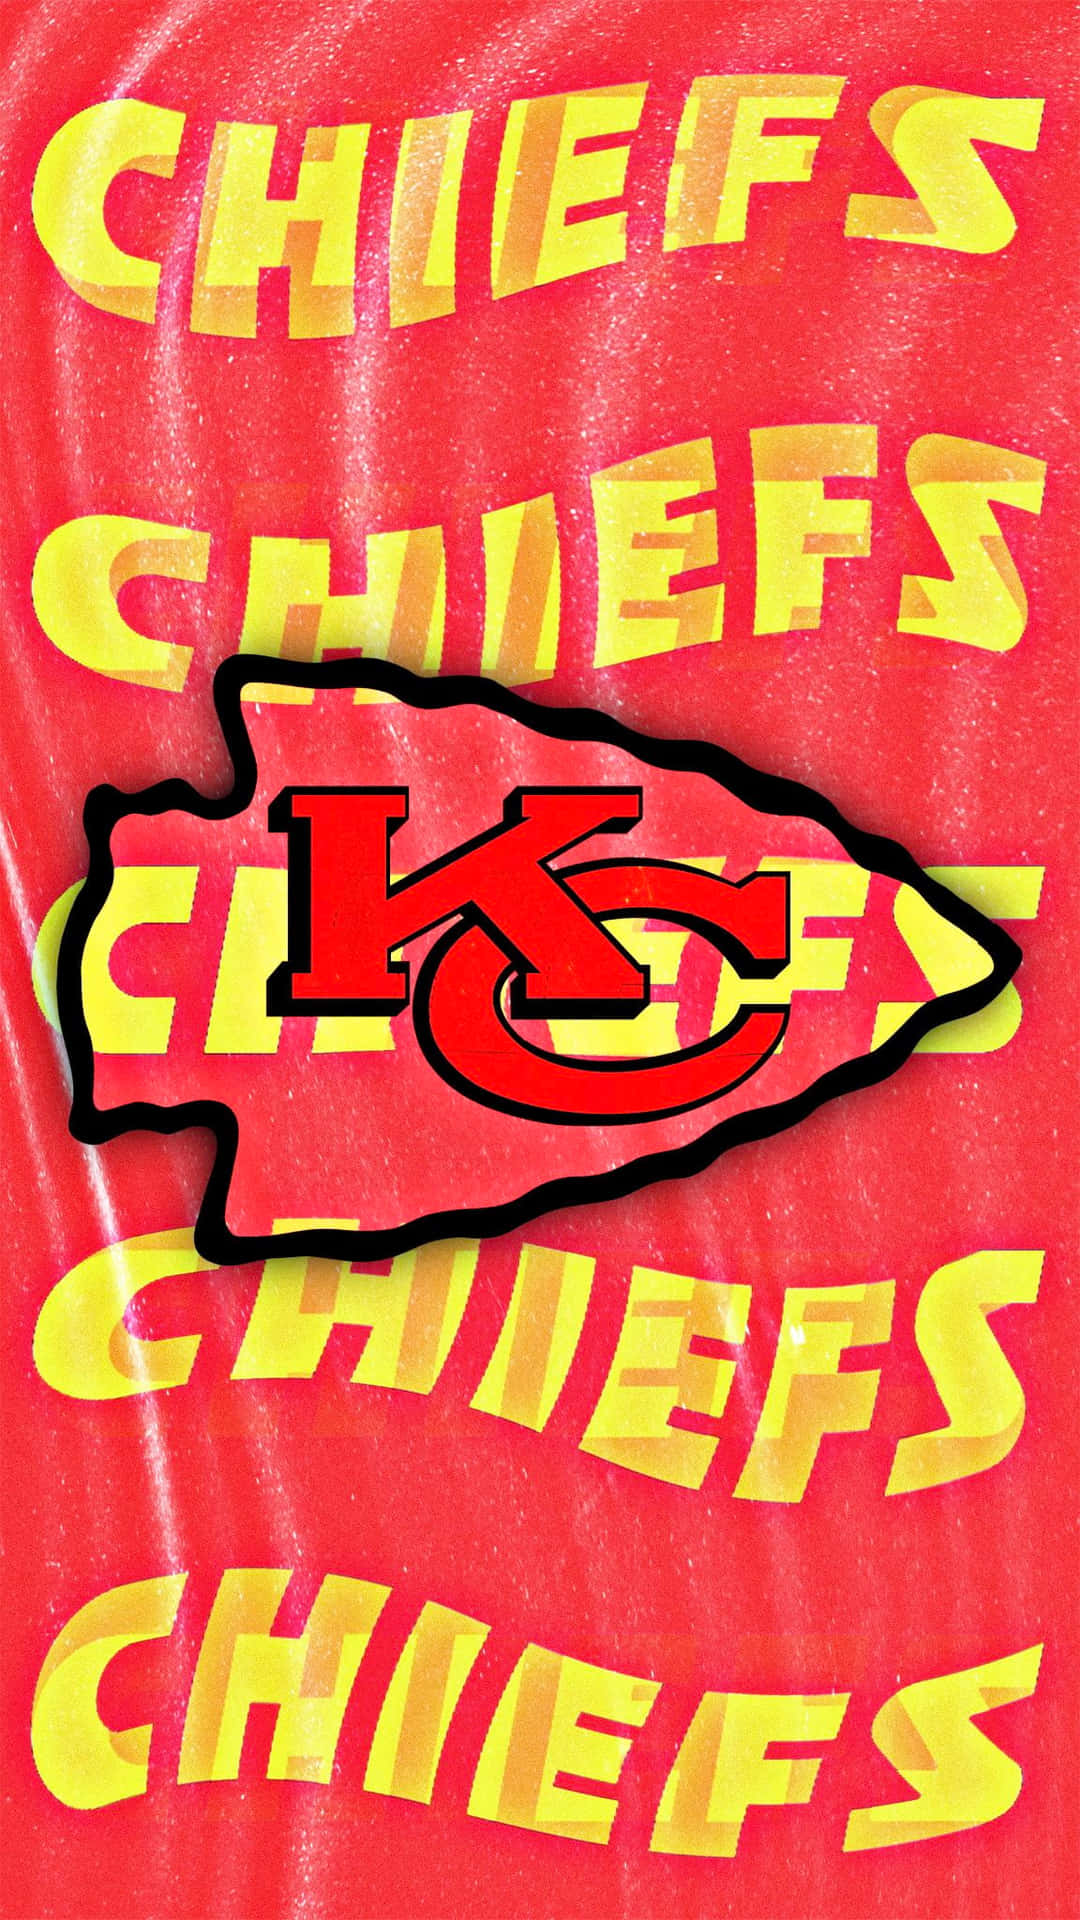 Vis din stolthed for Kansas City Chiefs med dette stilfulde iPhone baggrundsbillede. Wallpaper